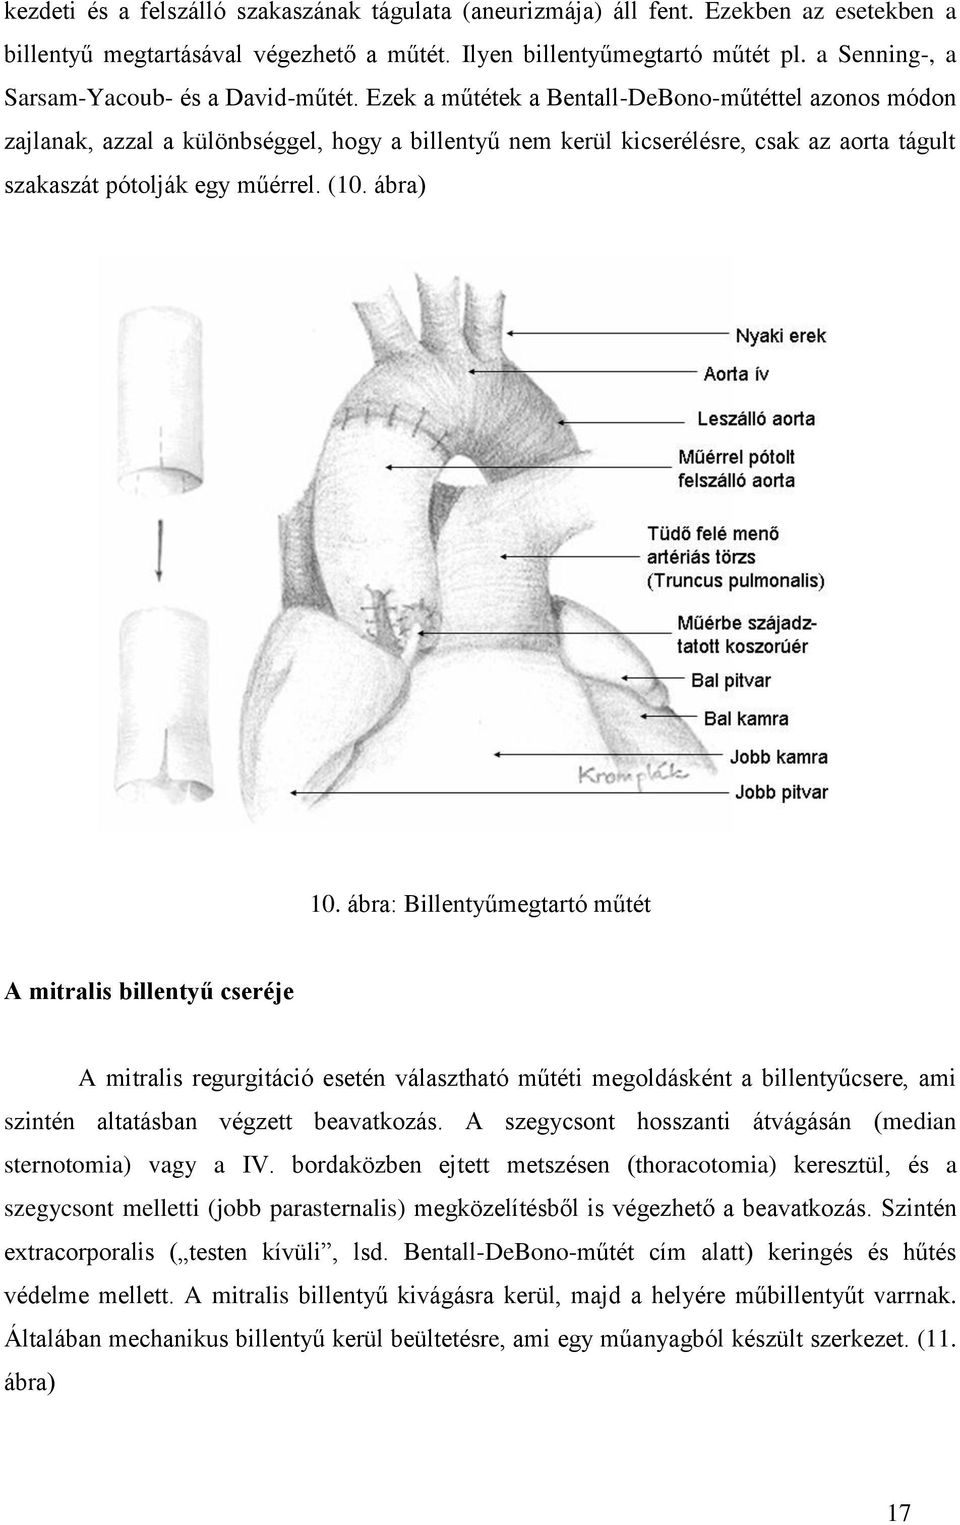 Ezek a műtétek a Bentall-DeBono-műtéttel azonos módon zajlanak, azzal a különbséggel, hogy a billentyű nem kerül kicserélésre, csak az aorta tágult szakaszát pótolják egy műérrel. (10. ábra) 10.